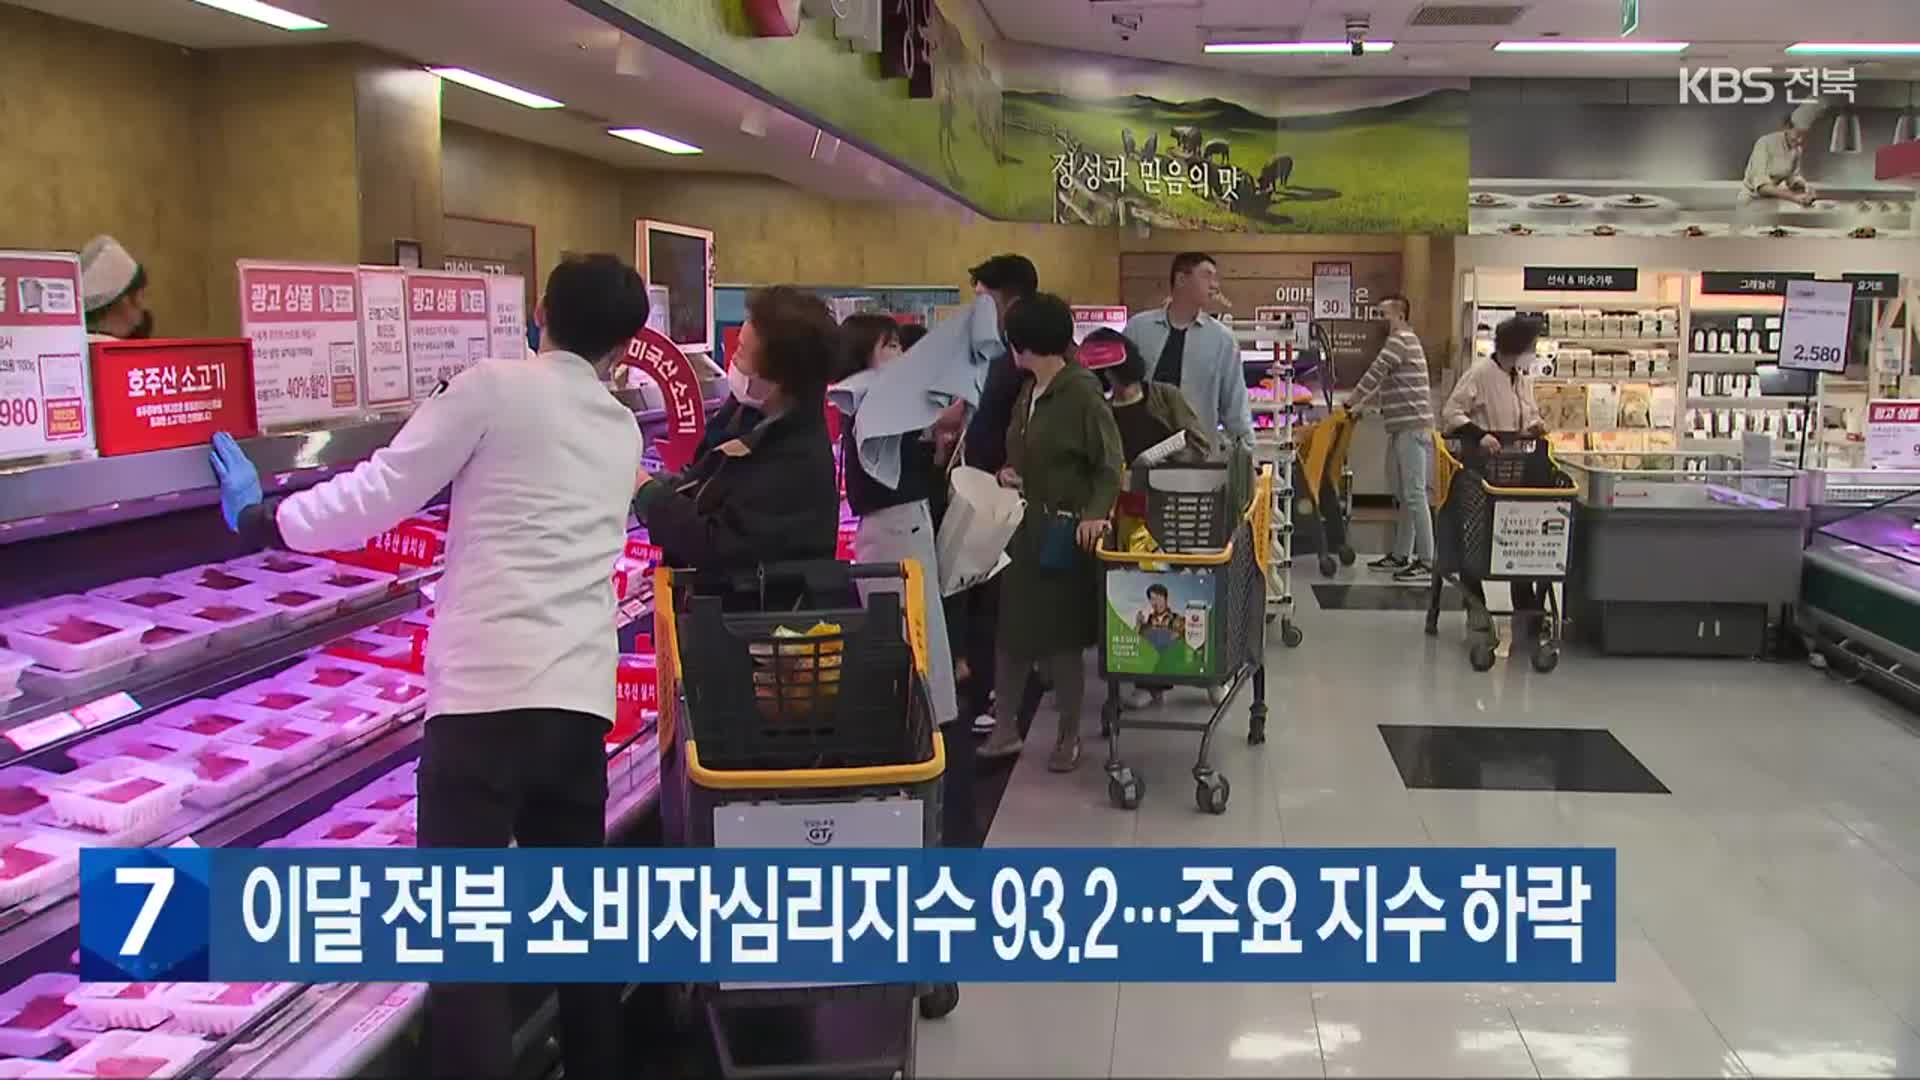 이달 전북 소비자심리지수 93.2…주요 지수 하락